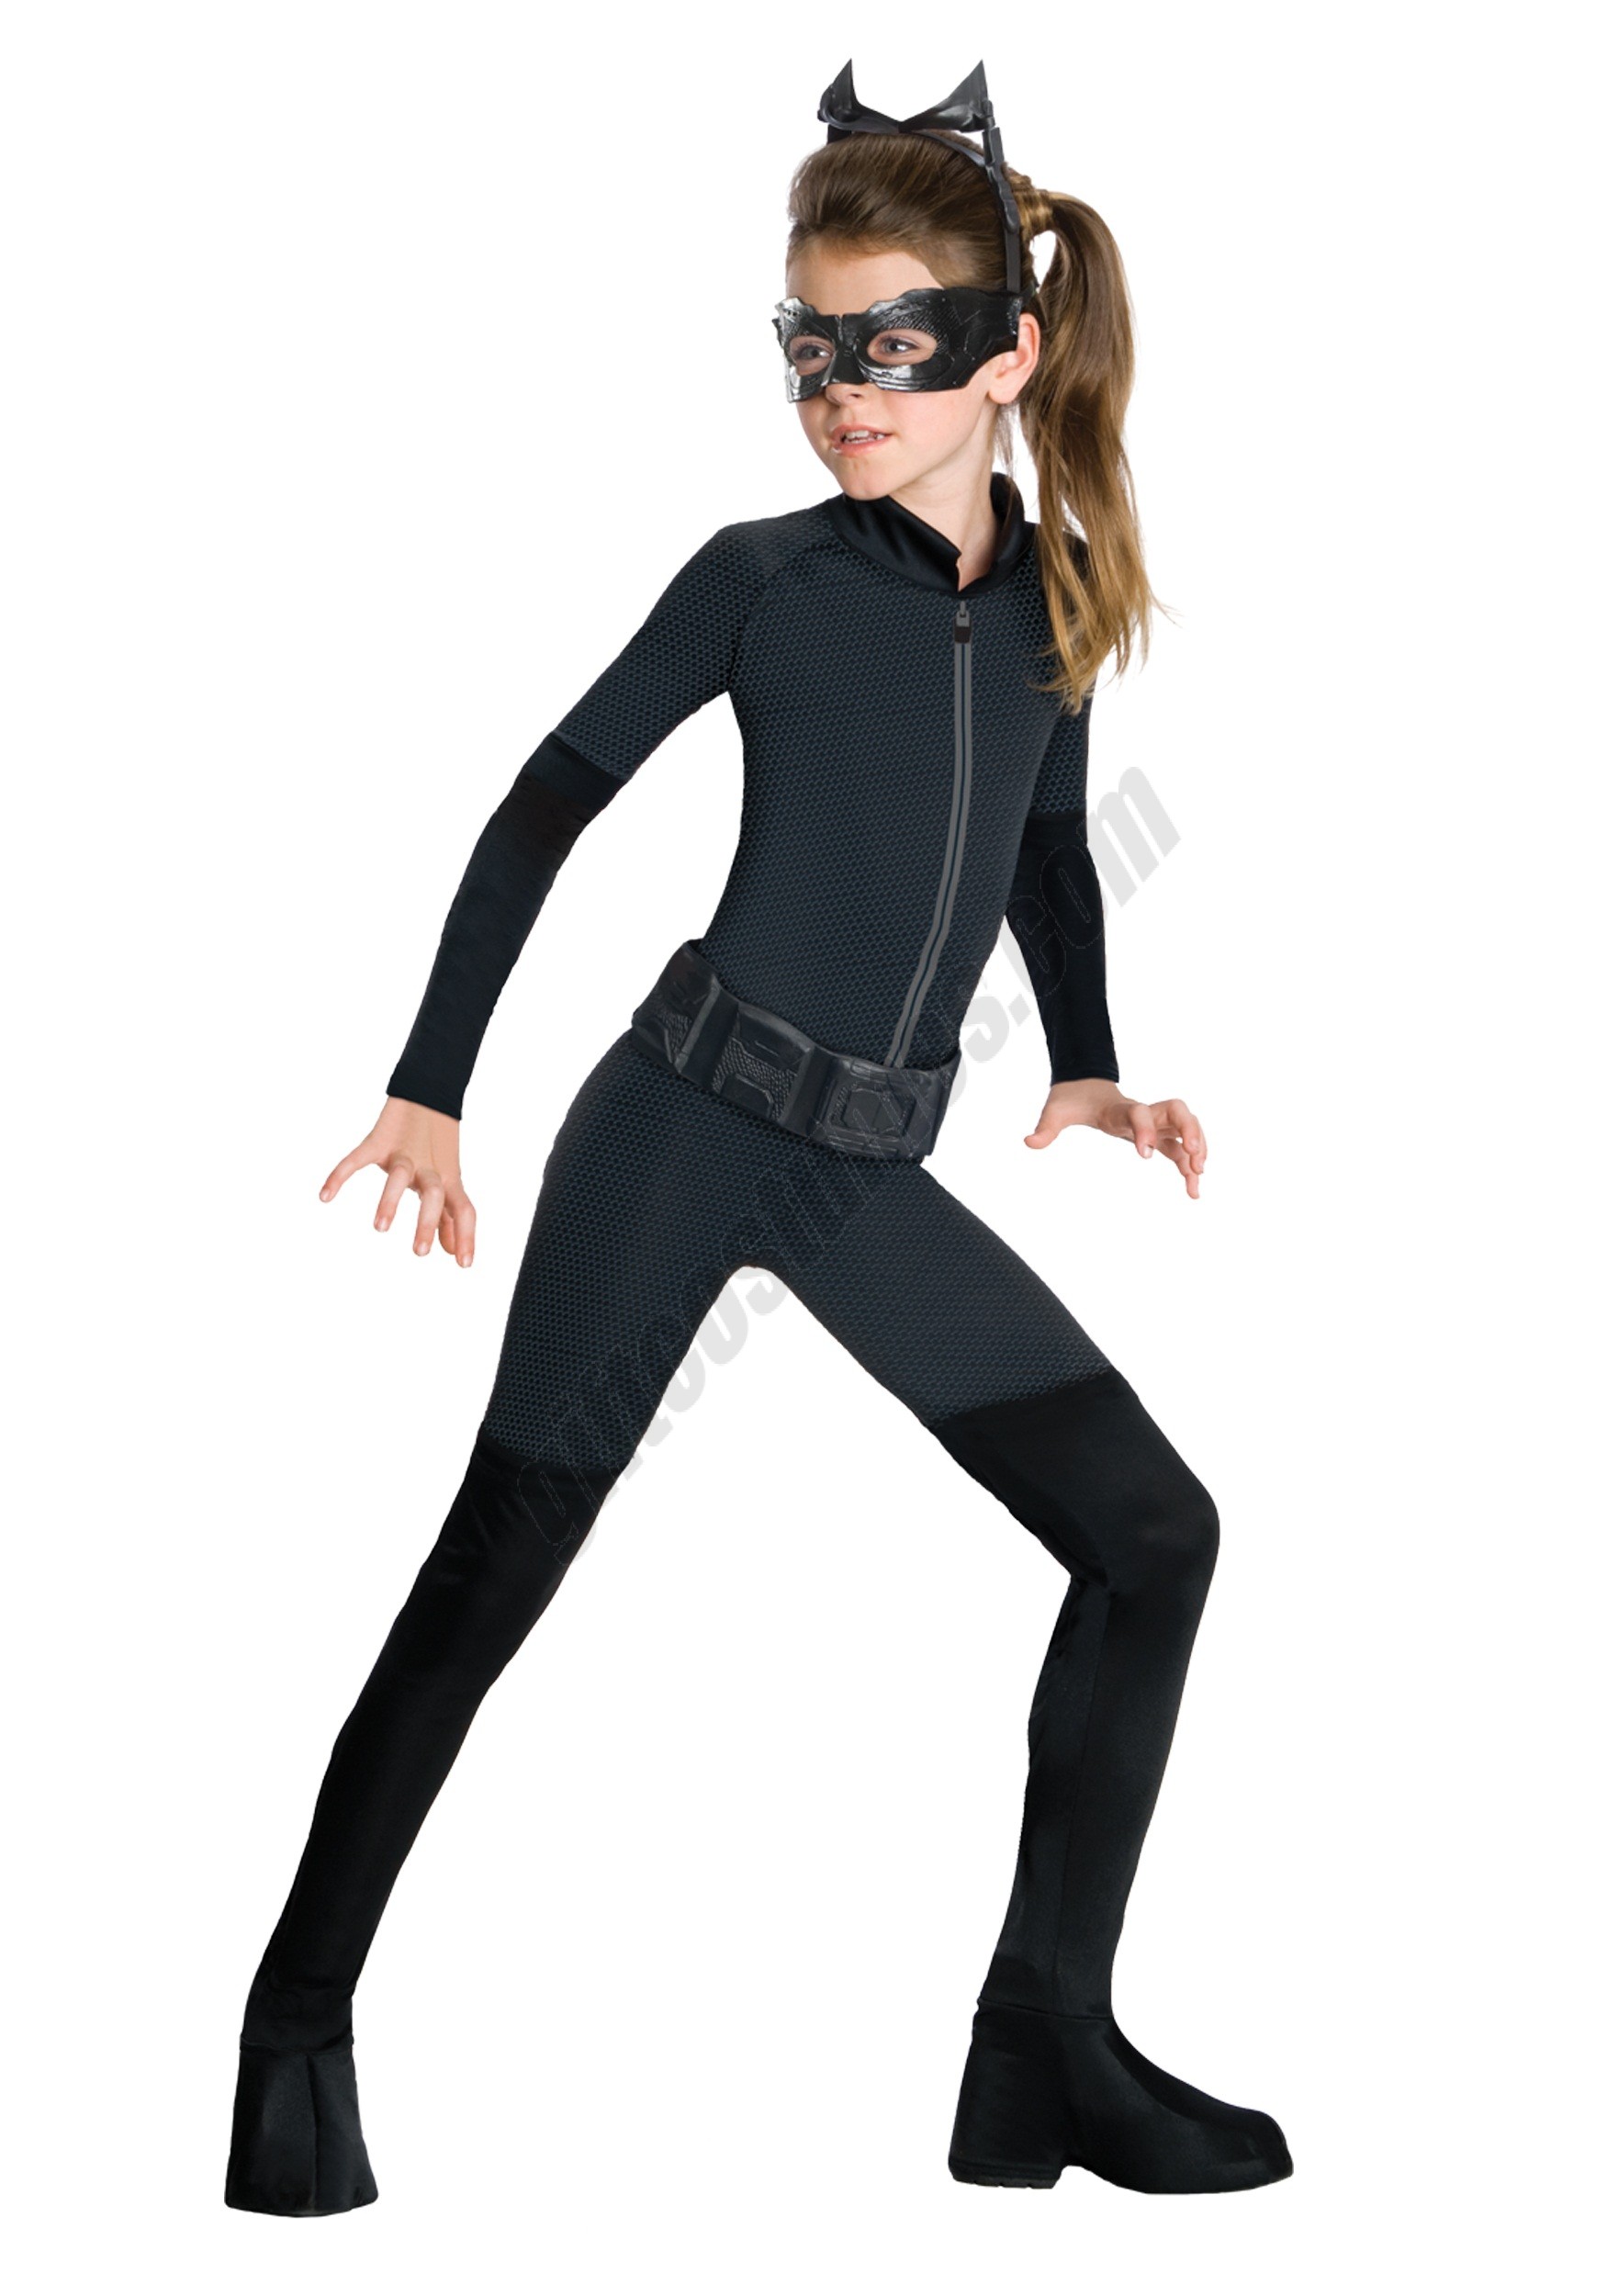 Tween Catwoman Costume Promotions - Tween Catwoman Costume Promotions